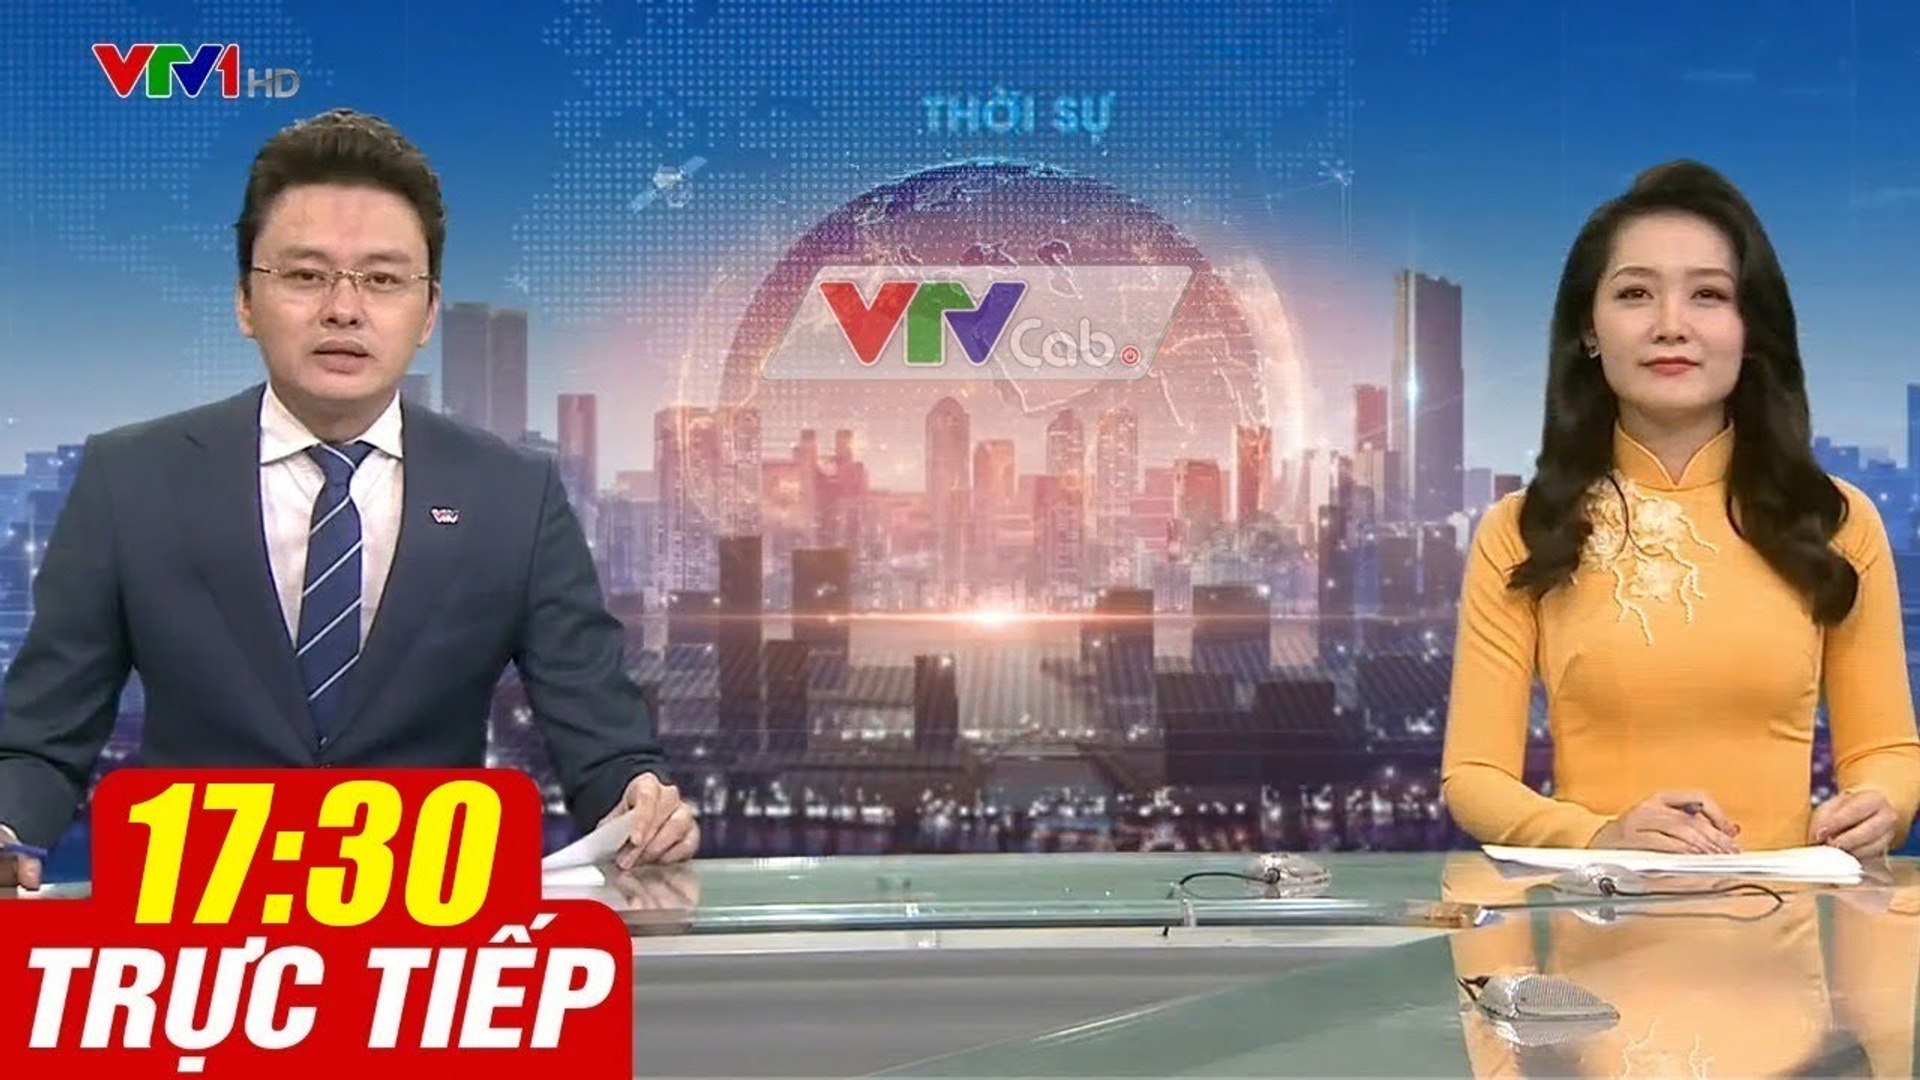 Trực Tiếp VIỆT NAM HÔM NAY 17h30 ngày 23.08.2020  Tin tức thời sự VTV1 mới nhất hôm nay